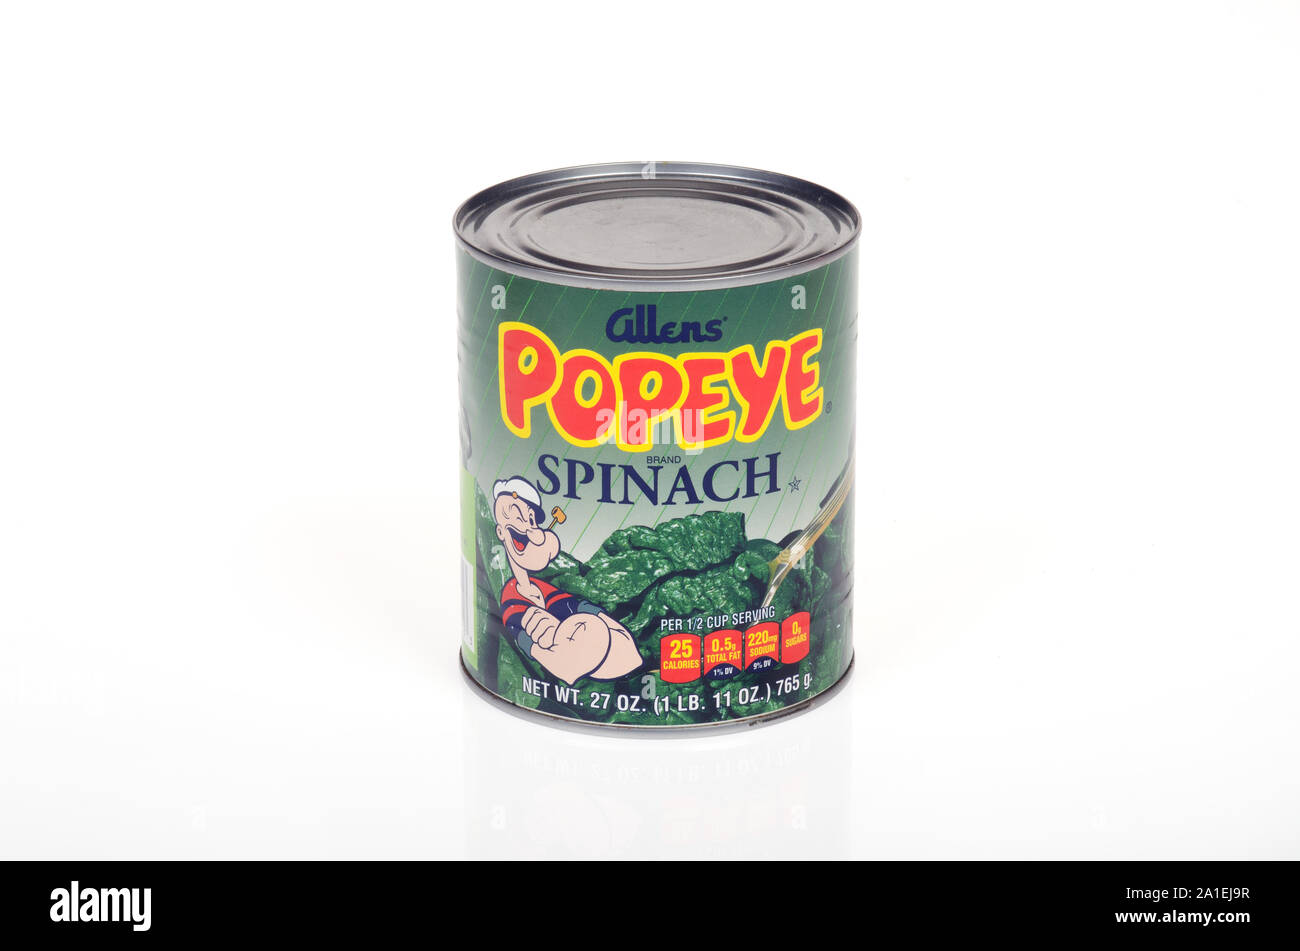 Popeye spinach immagini e fotografie stock ad alta risoluzione - Alamy